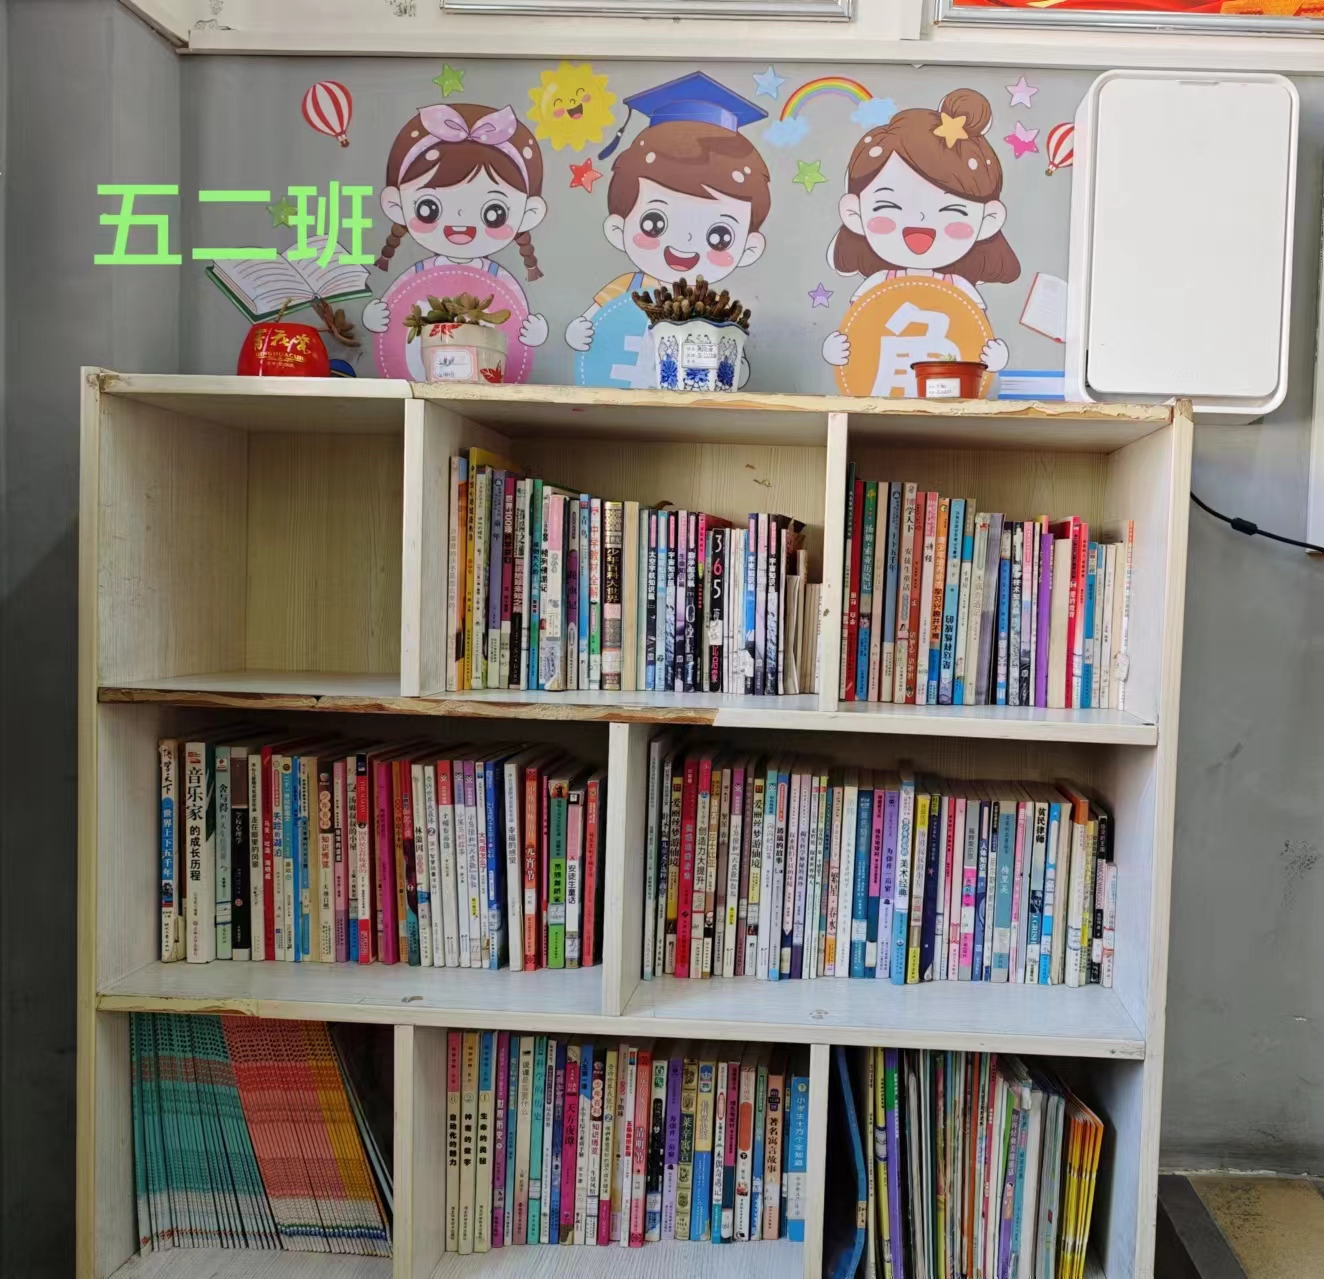 汉阴县漩涡镇中心小学建设“最美图书角”